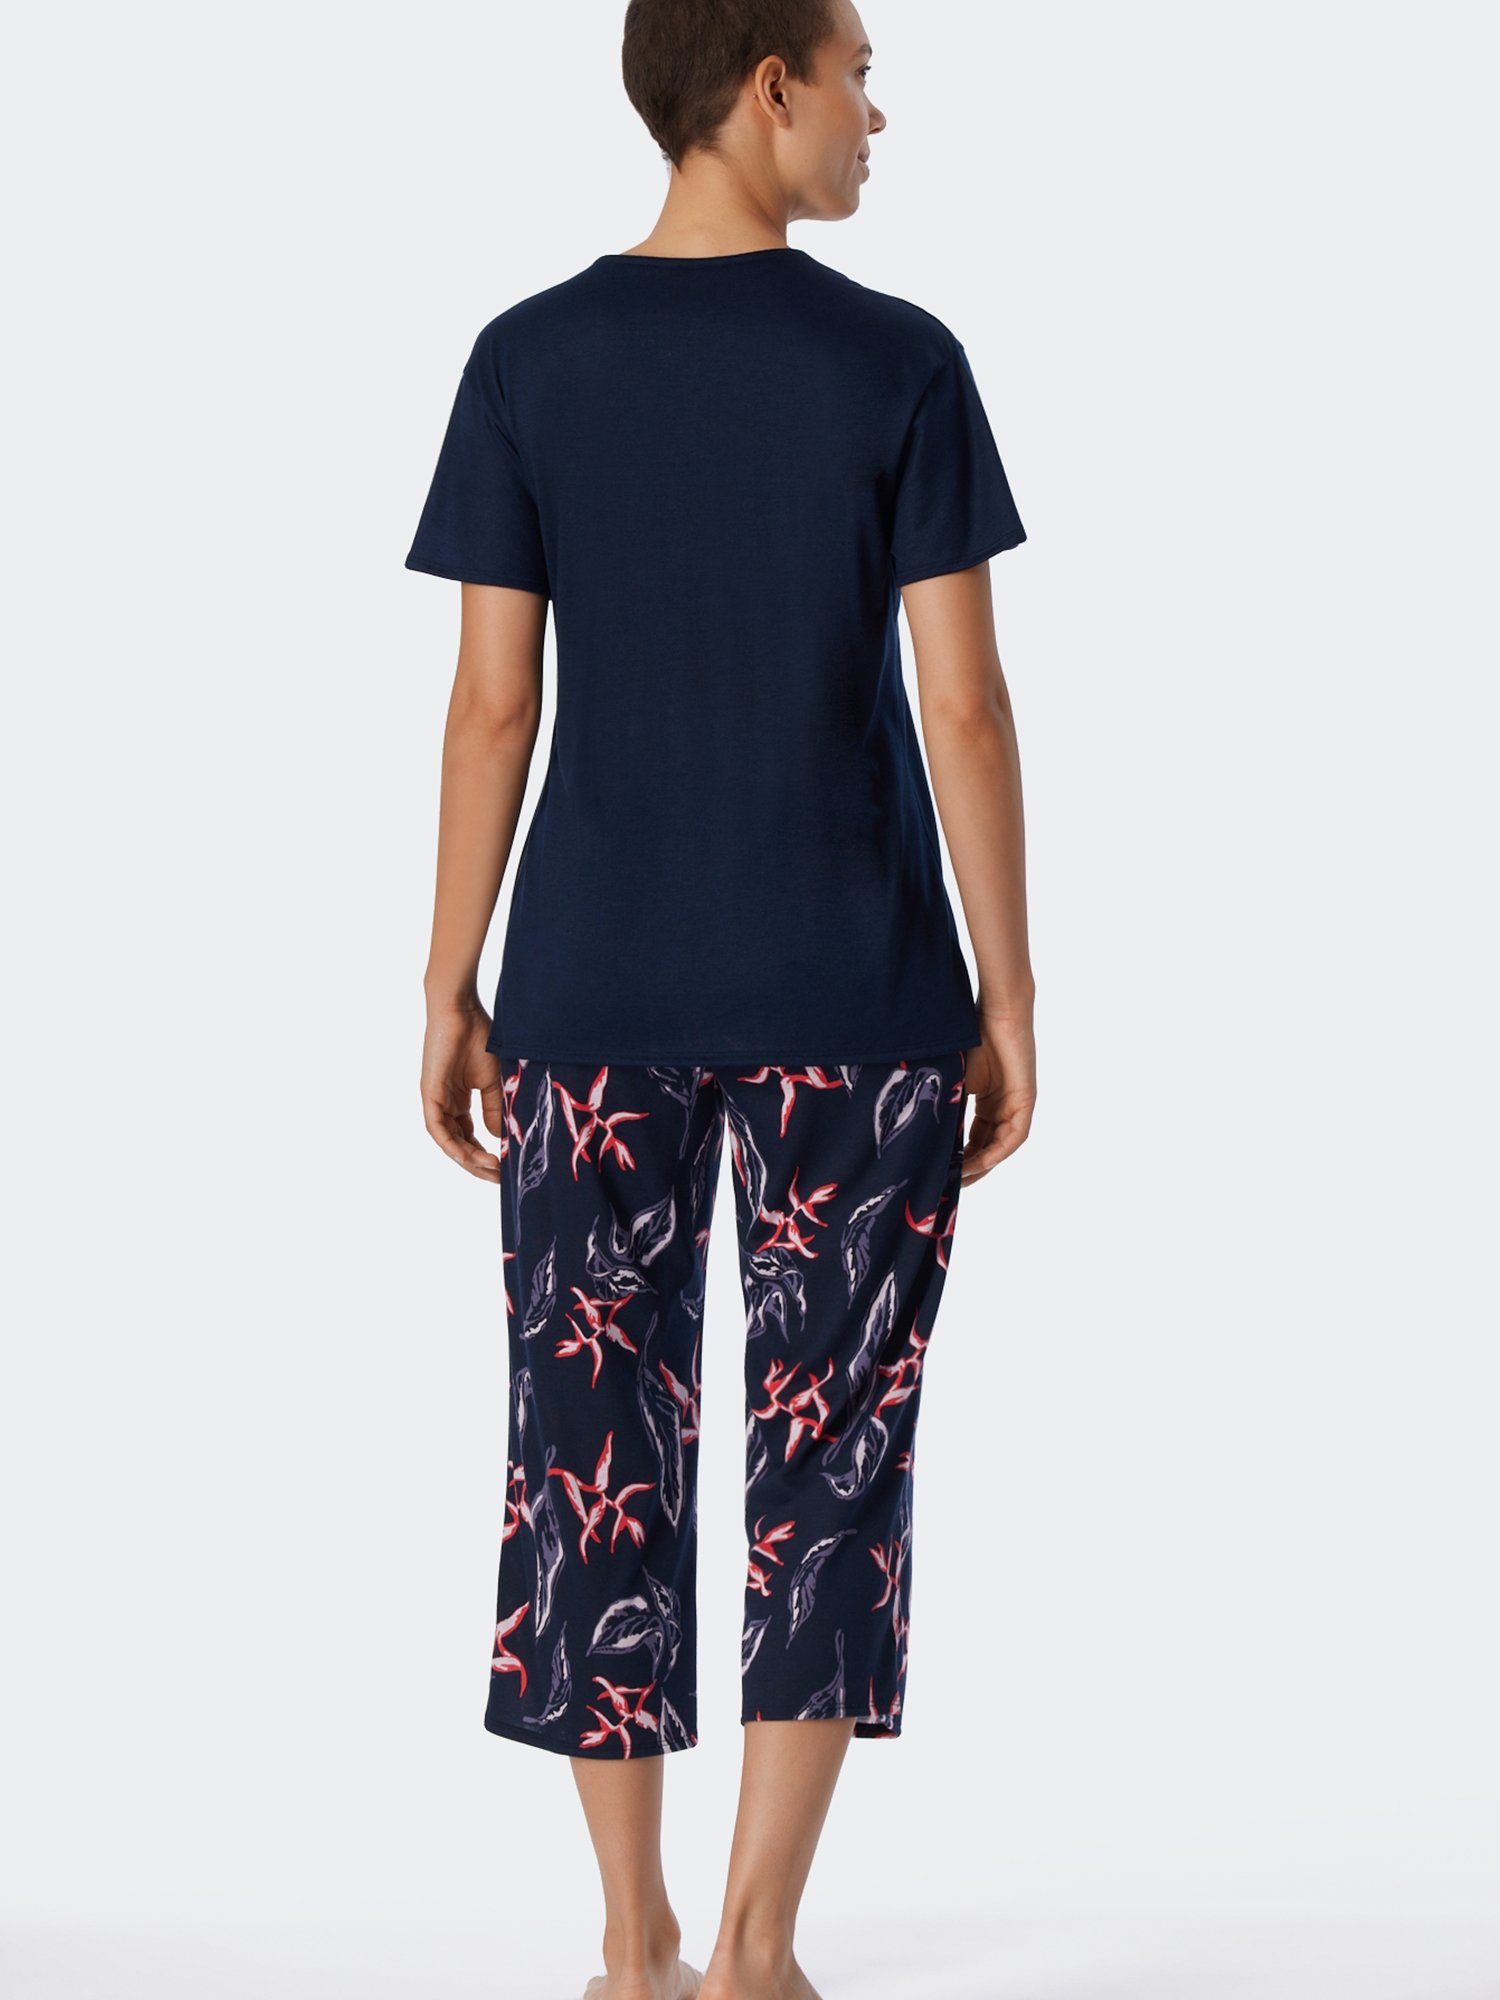 Nightwear Schiesser Pyjama multicolor Contemporary 1